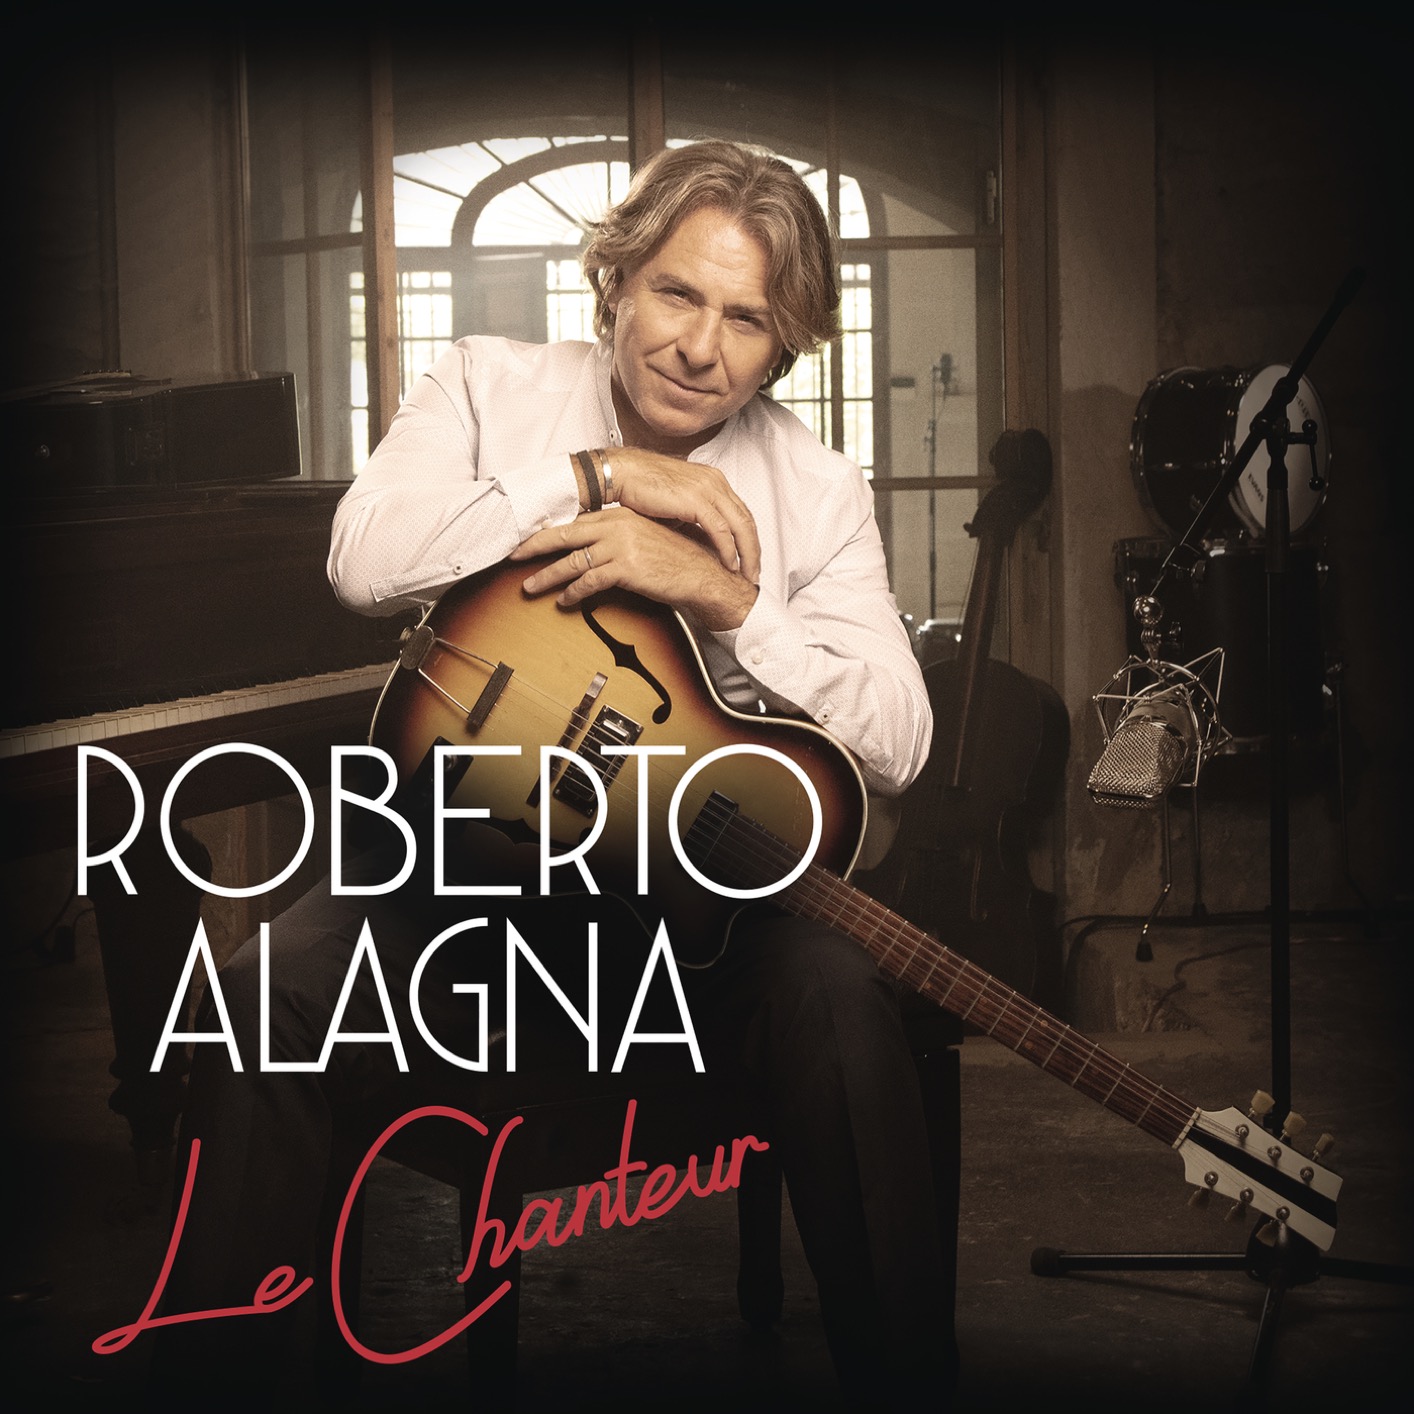 Roberto Alagna – Le Chanteur (2020) [FLAC 24bit/96kHz]